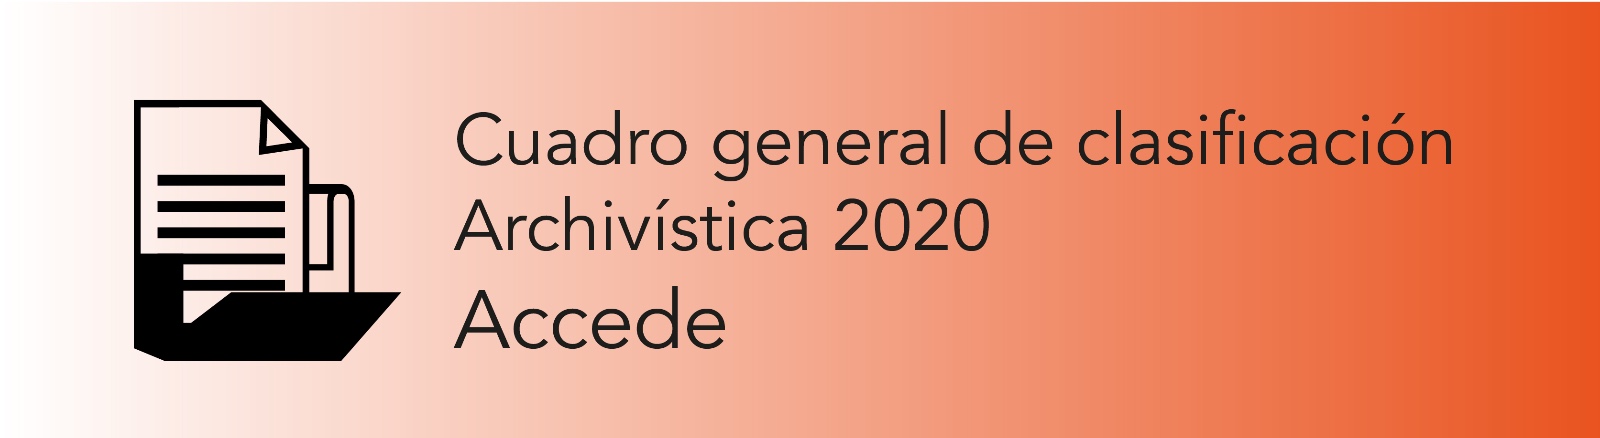 Imagen que permite conocer el Cuadro General de Clasificación Archivística 2020